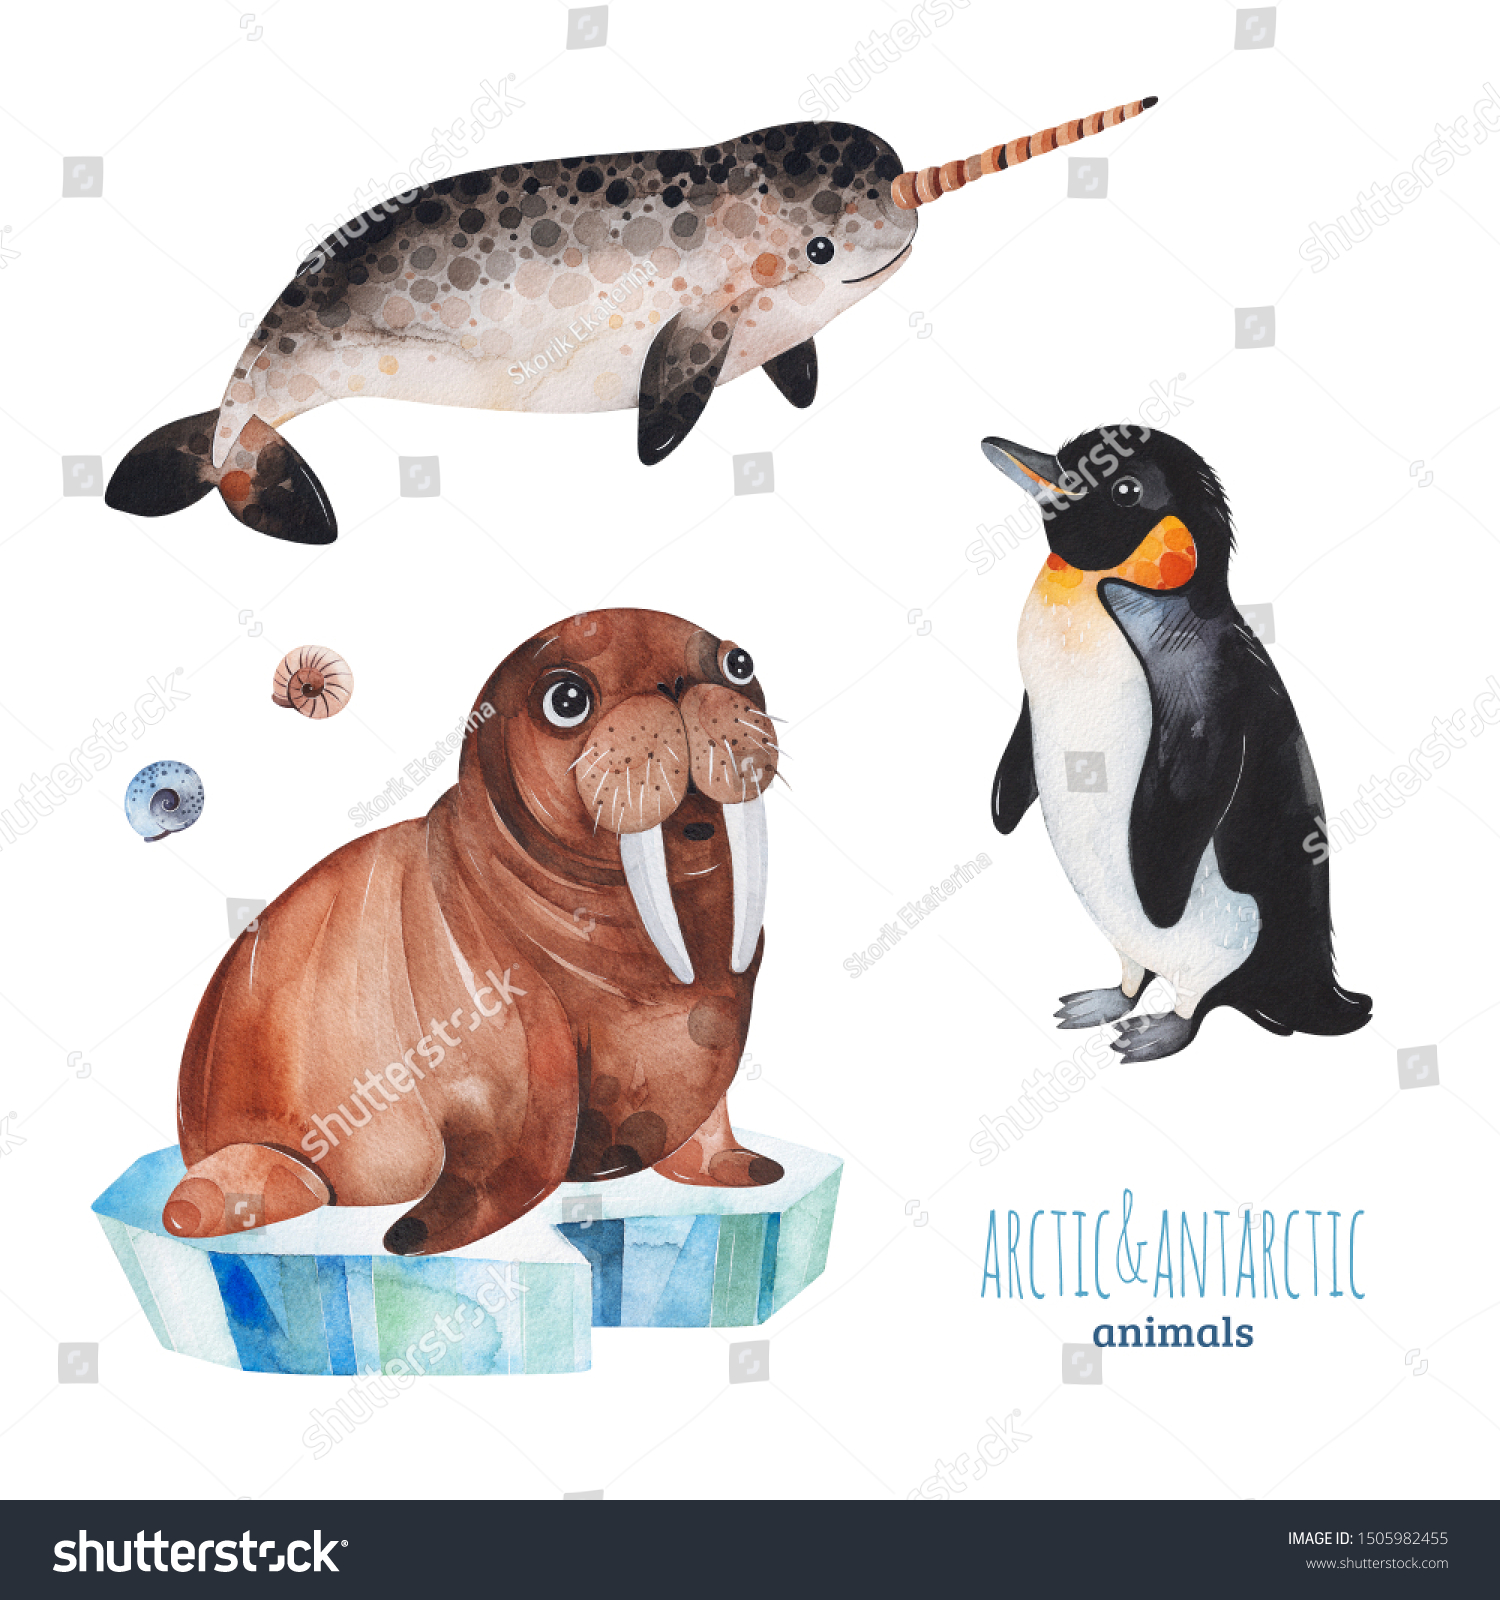 かわいいペンギン ナーホール セイウチの北極や南極の 動物を使った水彩画セット プロジェクト 印刷 スクラップブック ベビーシャワー バースデーカード 招待状 グリーティングカードなどに最適 のイラスト素材